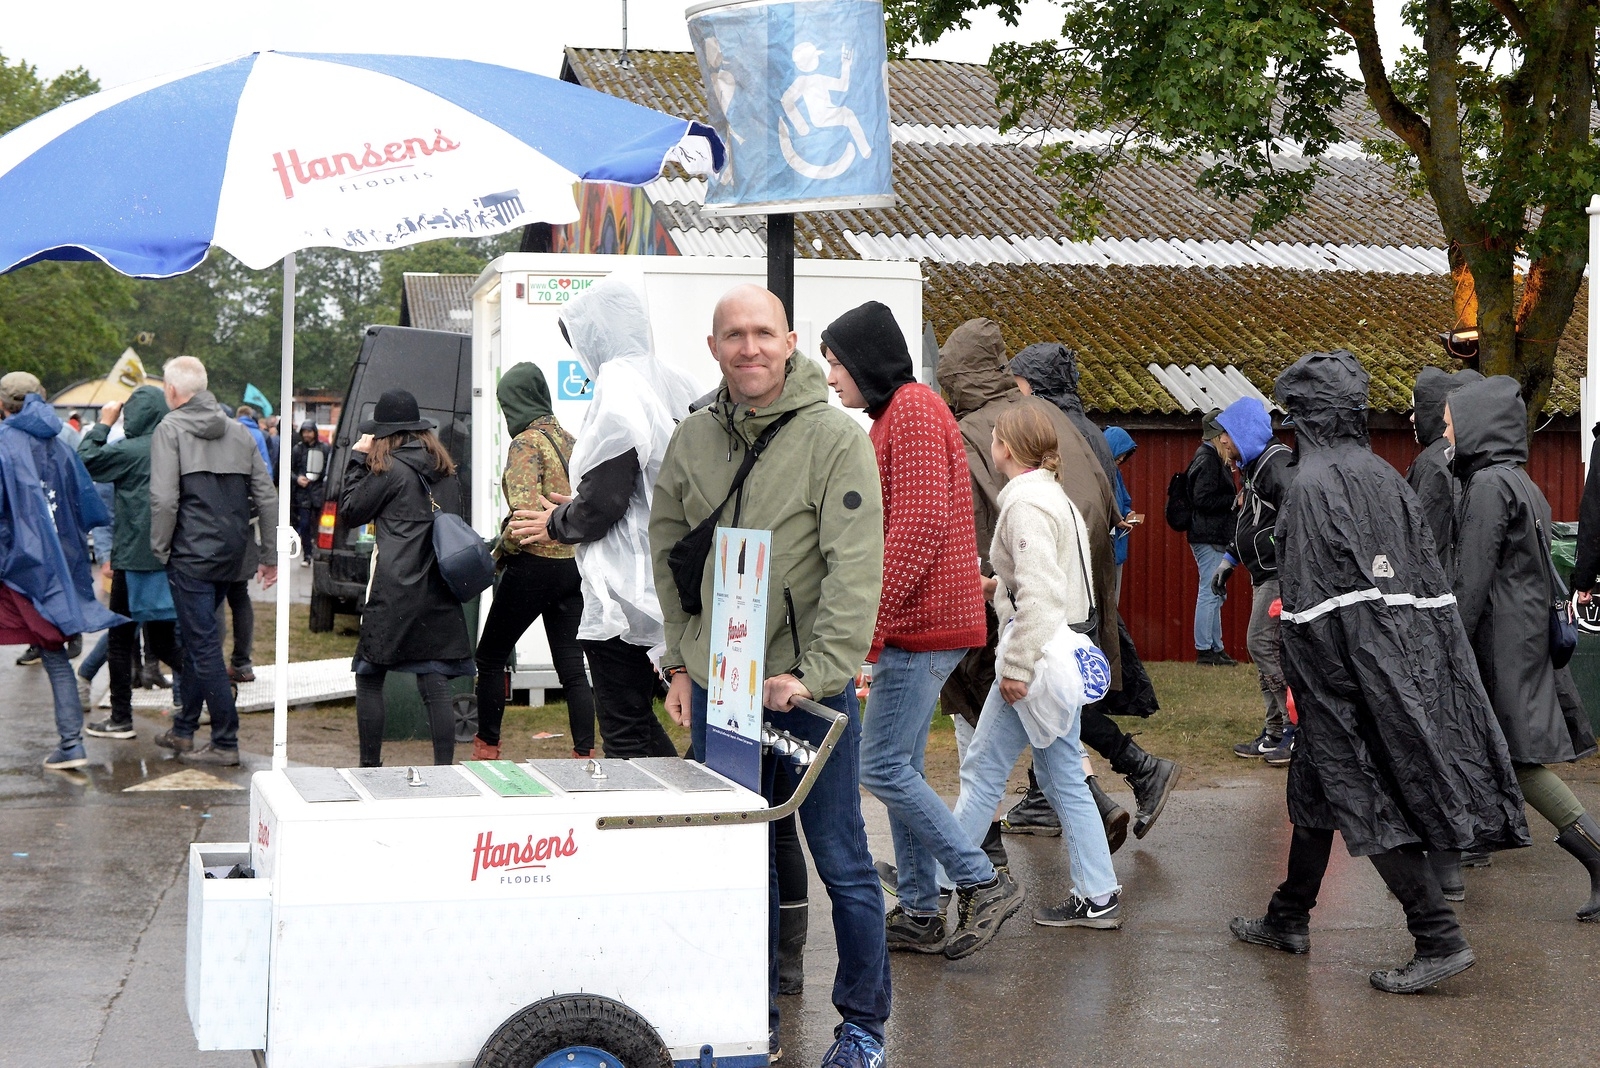 Ronni Klarskov från Roskilde sålde glass till förmån för det lokala fotbollslaget. I regnet på torsdagen hade han inte mycket tur med försäljningen. "Nej, jag har sålt mycket litet idag. Det är mest barnen som vill ha", säger han. Roskildefestivalen 2019. Foto: Ralph Bretzer